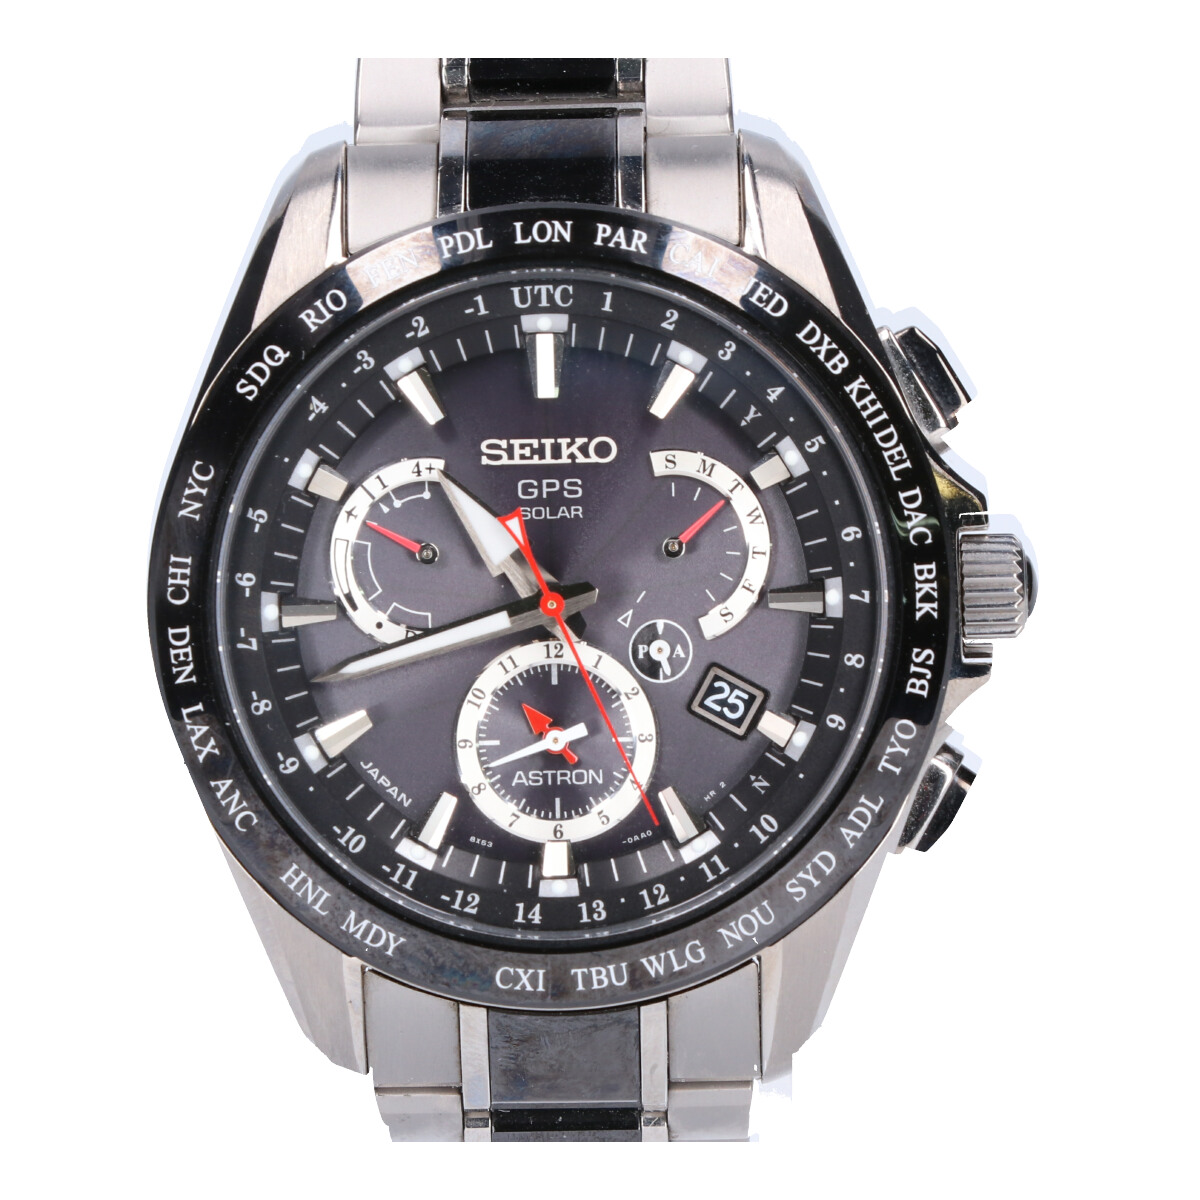 セイコーのSBXB041 8X53-0AB0 Astronアストロン GPSソーラー腕時計の買取実績です。